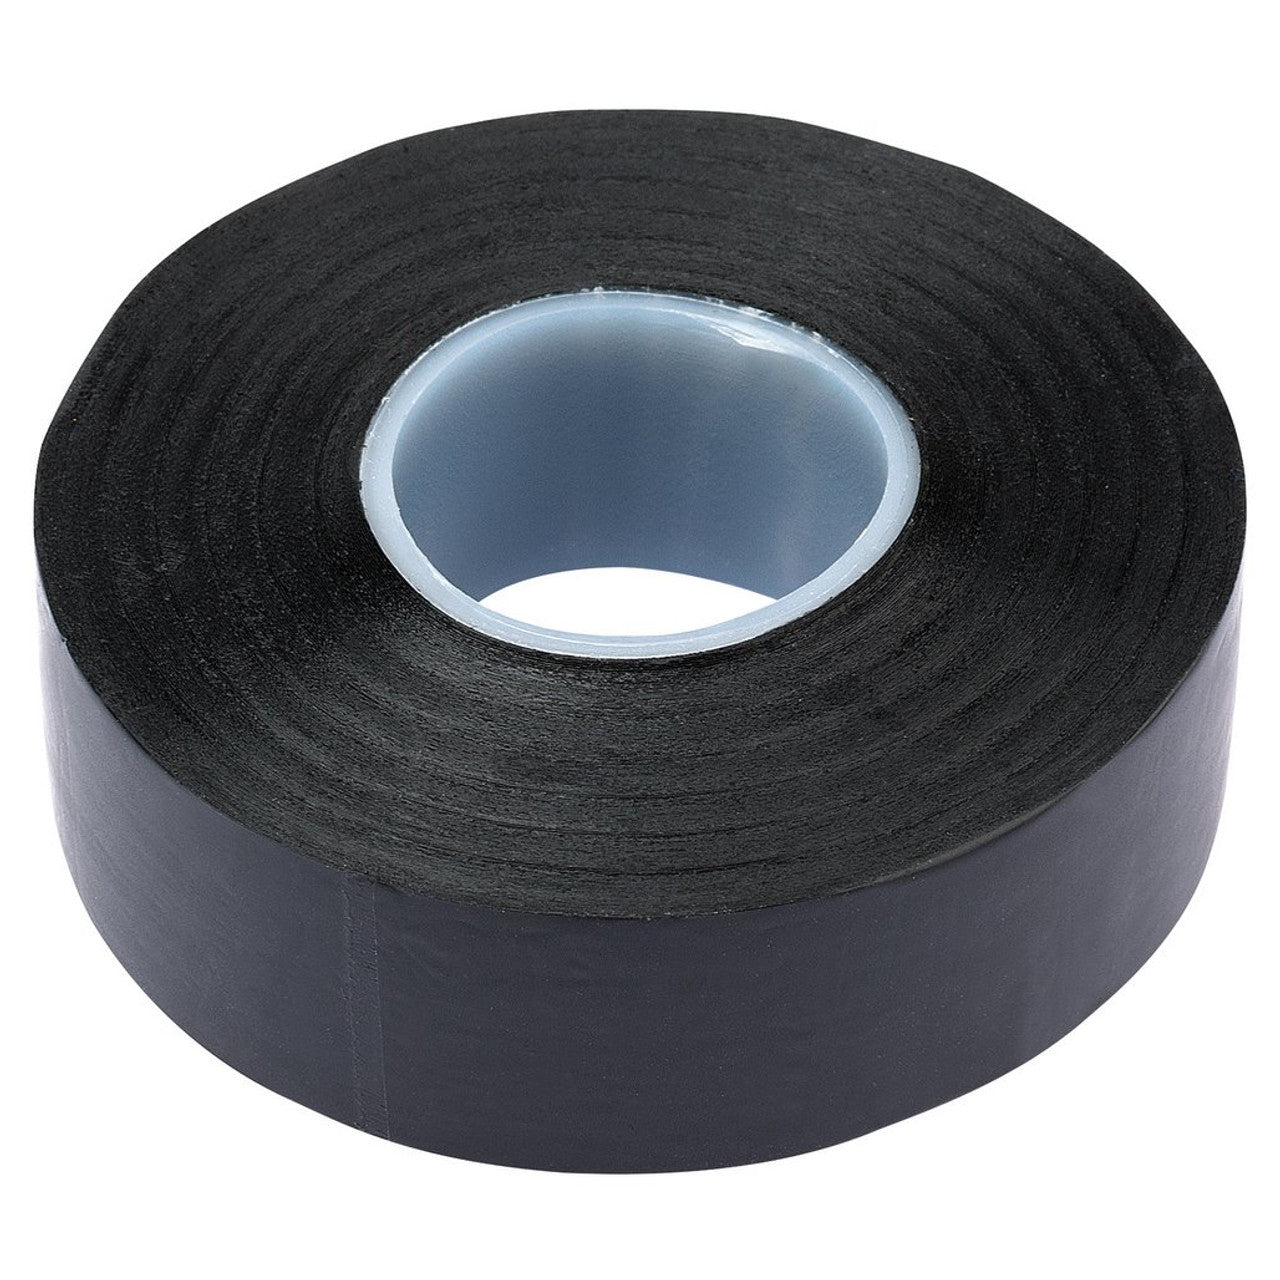 Draper 11909 Insulation Tape, 20m x 19mm, Black